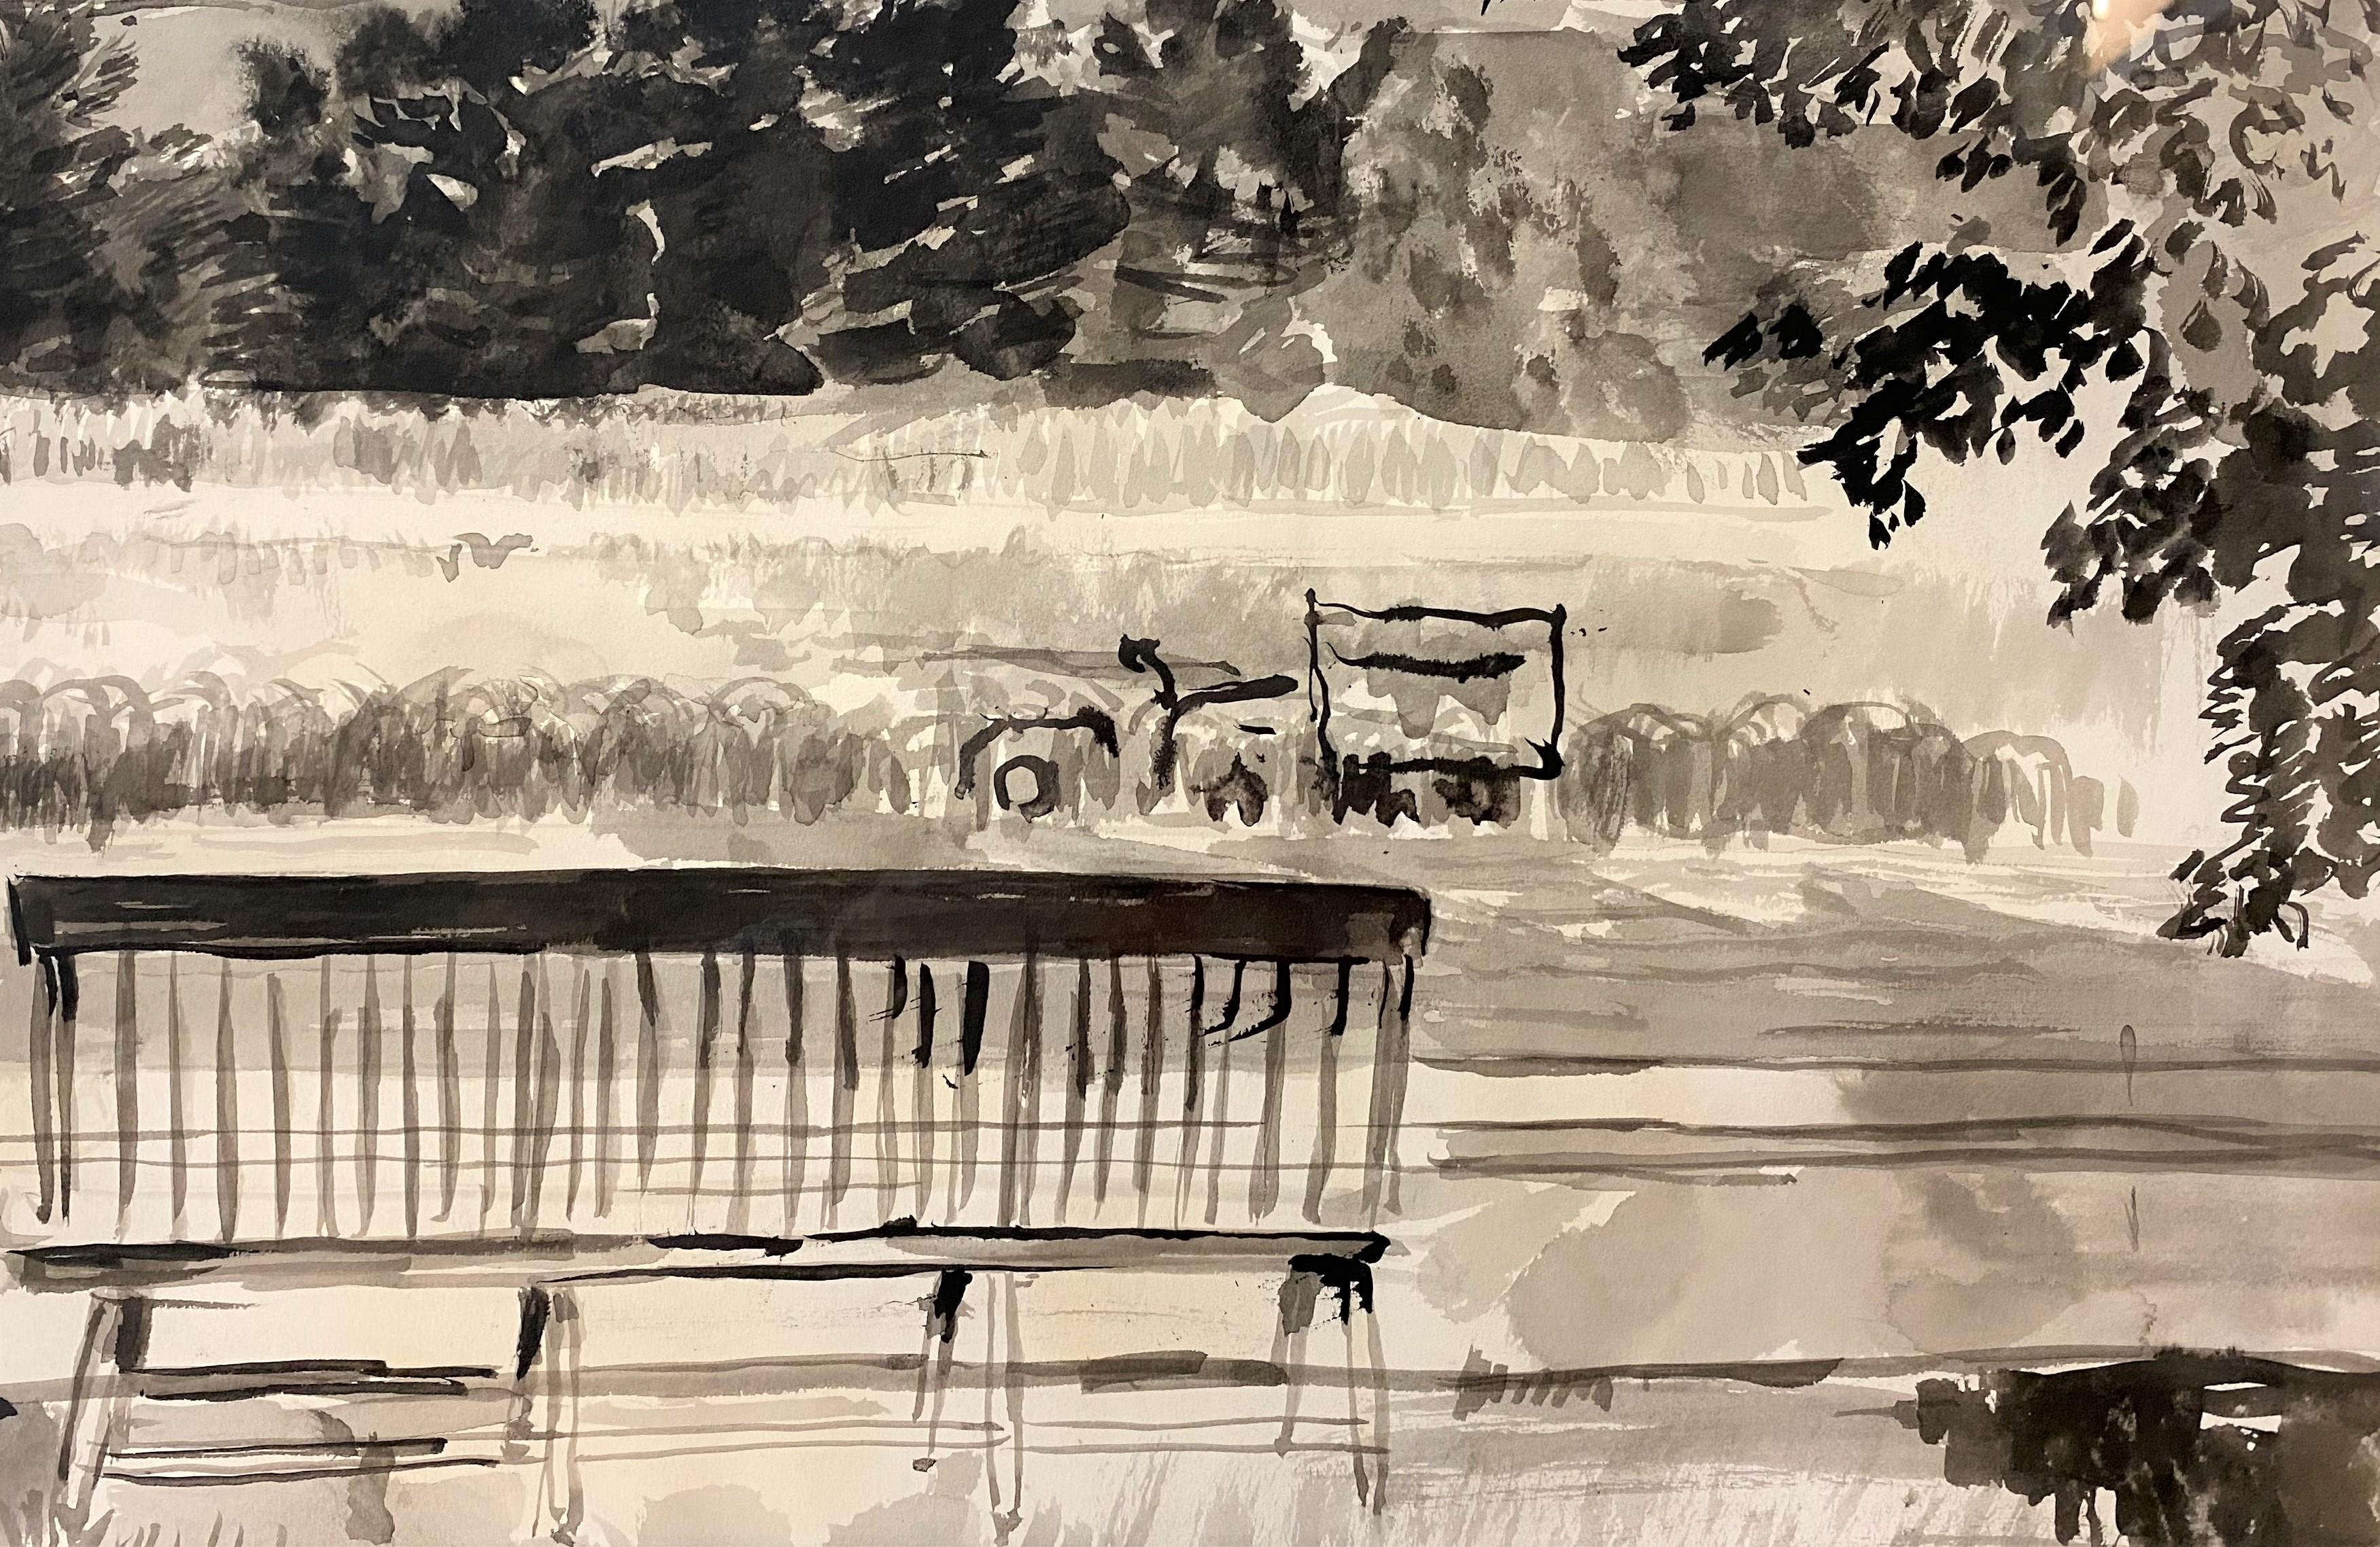 Ein schönes schwarz-weißes Aquarell des Mount Monadnock in New Hampshire des amerikanischen Künstlers Gifford Beal (1879-1956). Beal wurde in New York City geboren und studierte viele Jahre bei William Merritt Chase. Später wurde er für seine